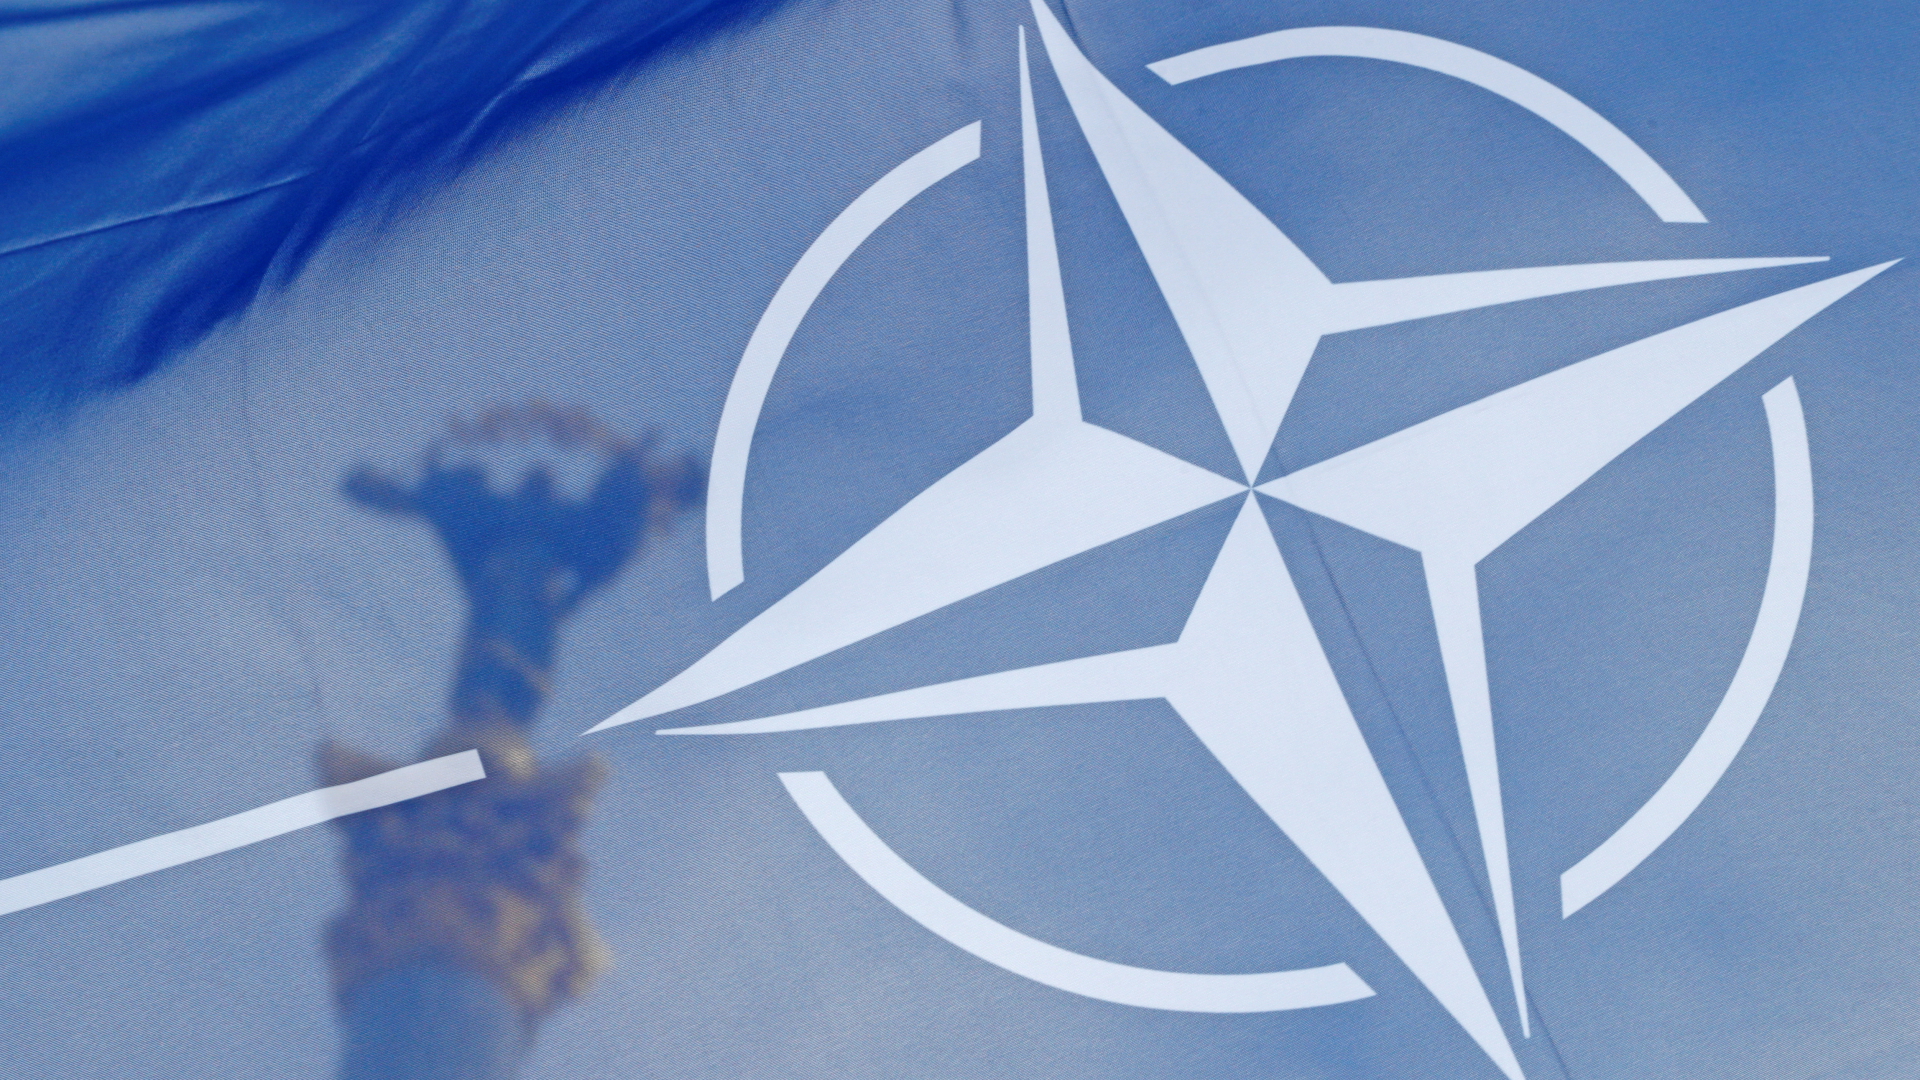 L’adesione dell’Ucraina: nove paesi della NATO hanno esercitato pressioni, un po’